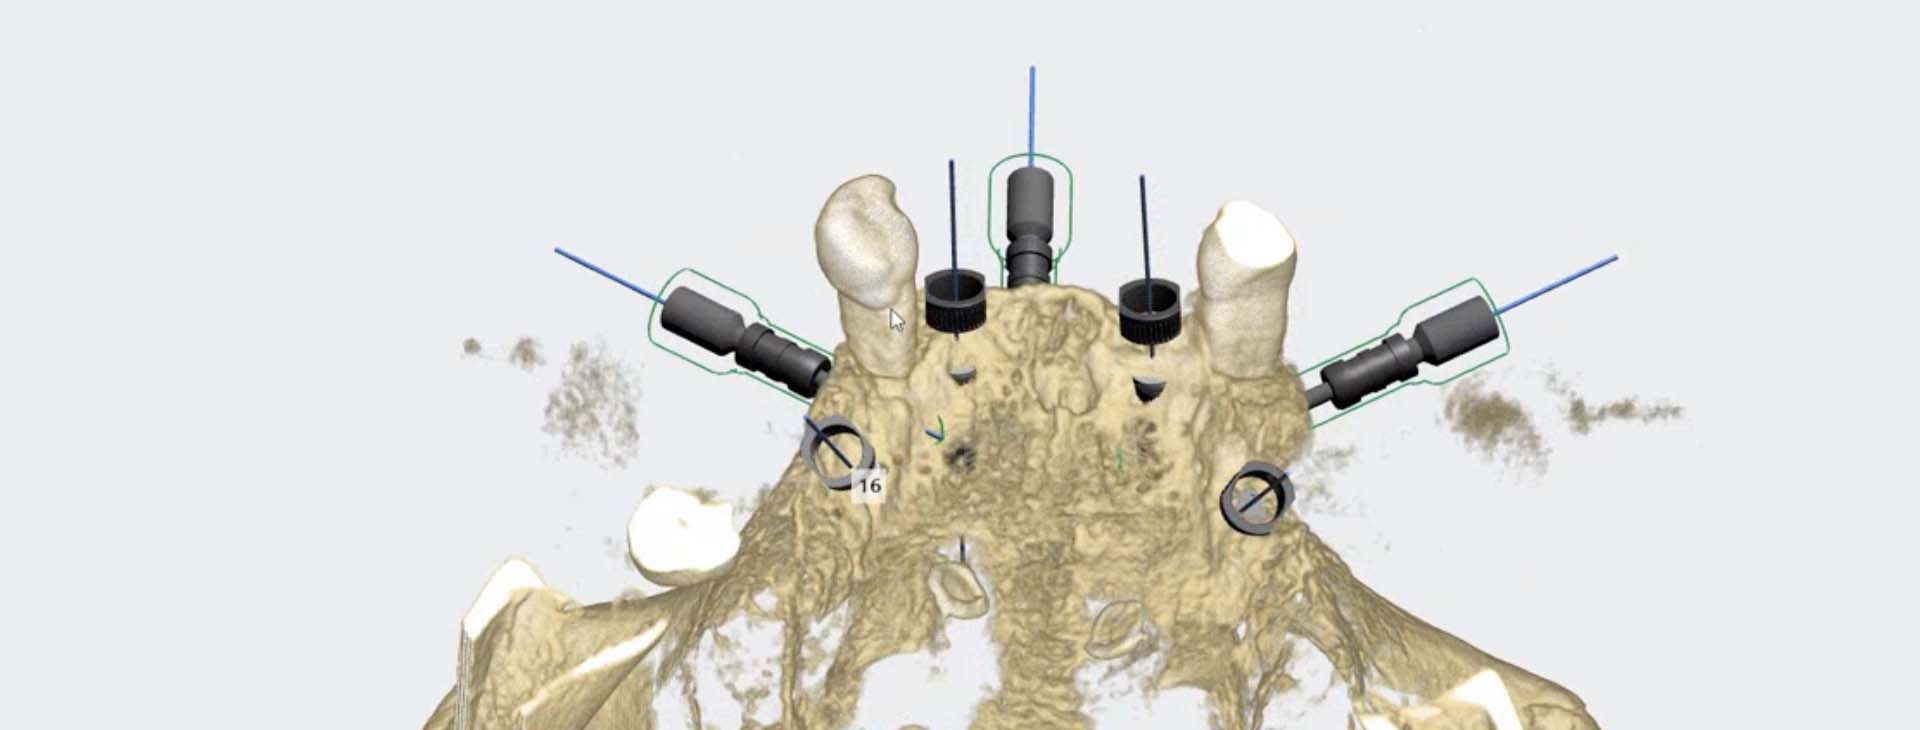 Dantų implantai bedančiams pacientams